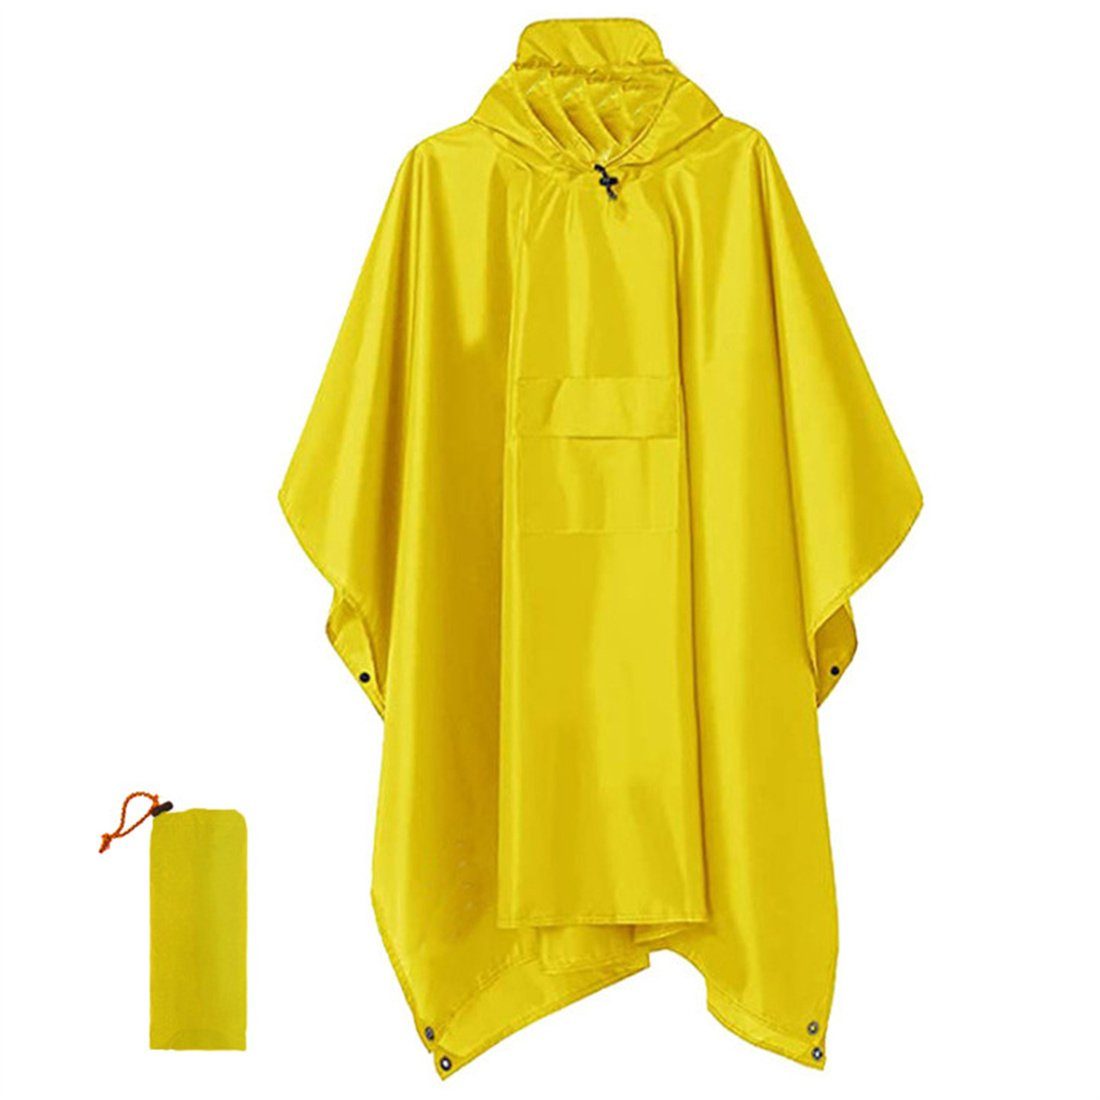 DÖRÖY Regenponcho Wasserdichter 3 in 1 Cape-Poncho für Erwachsene mit Kapuze und Mantel Gelb